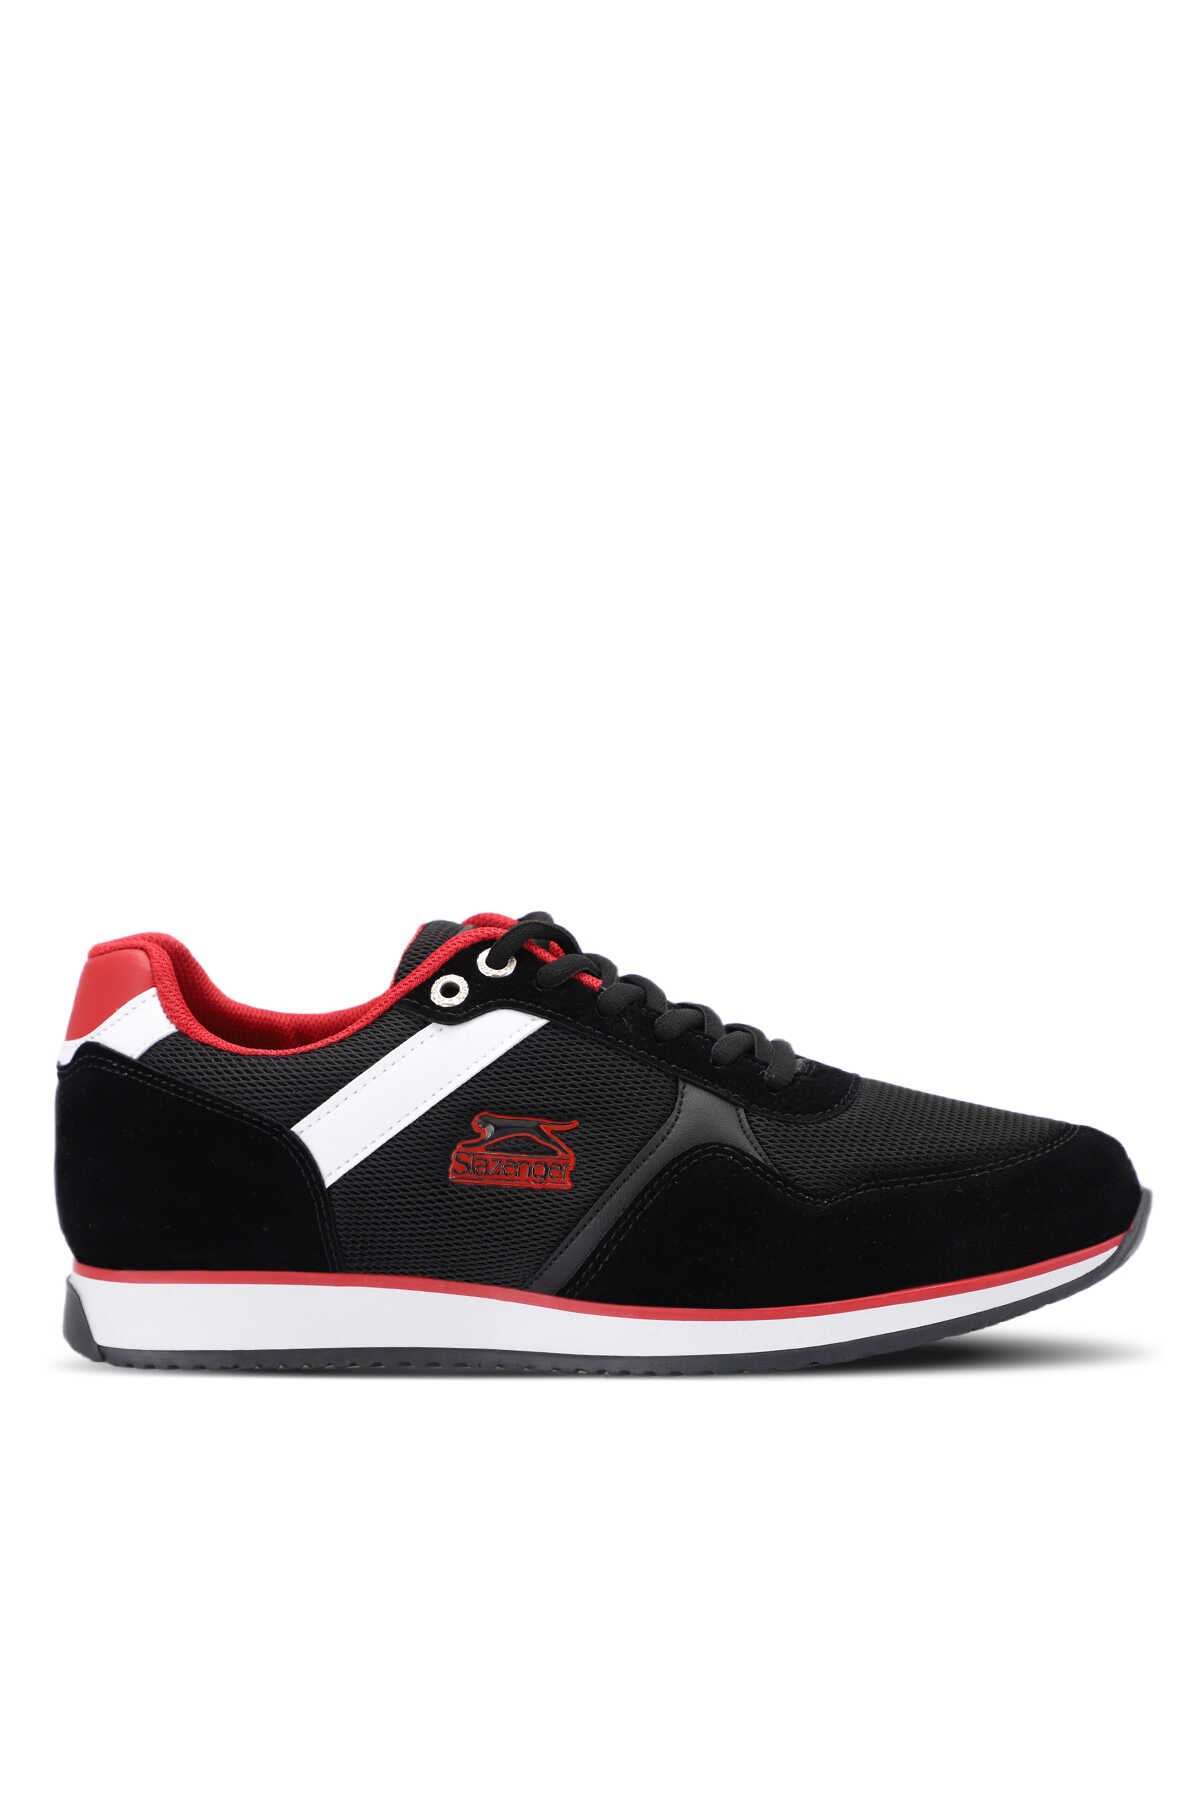 Slazenger - OLIVIERA I Sneaker Erkek Ayakkabı Siyah / Kırmızı